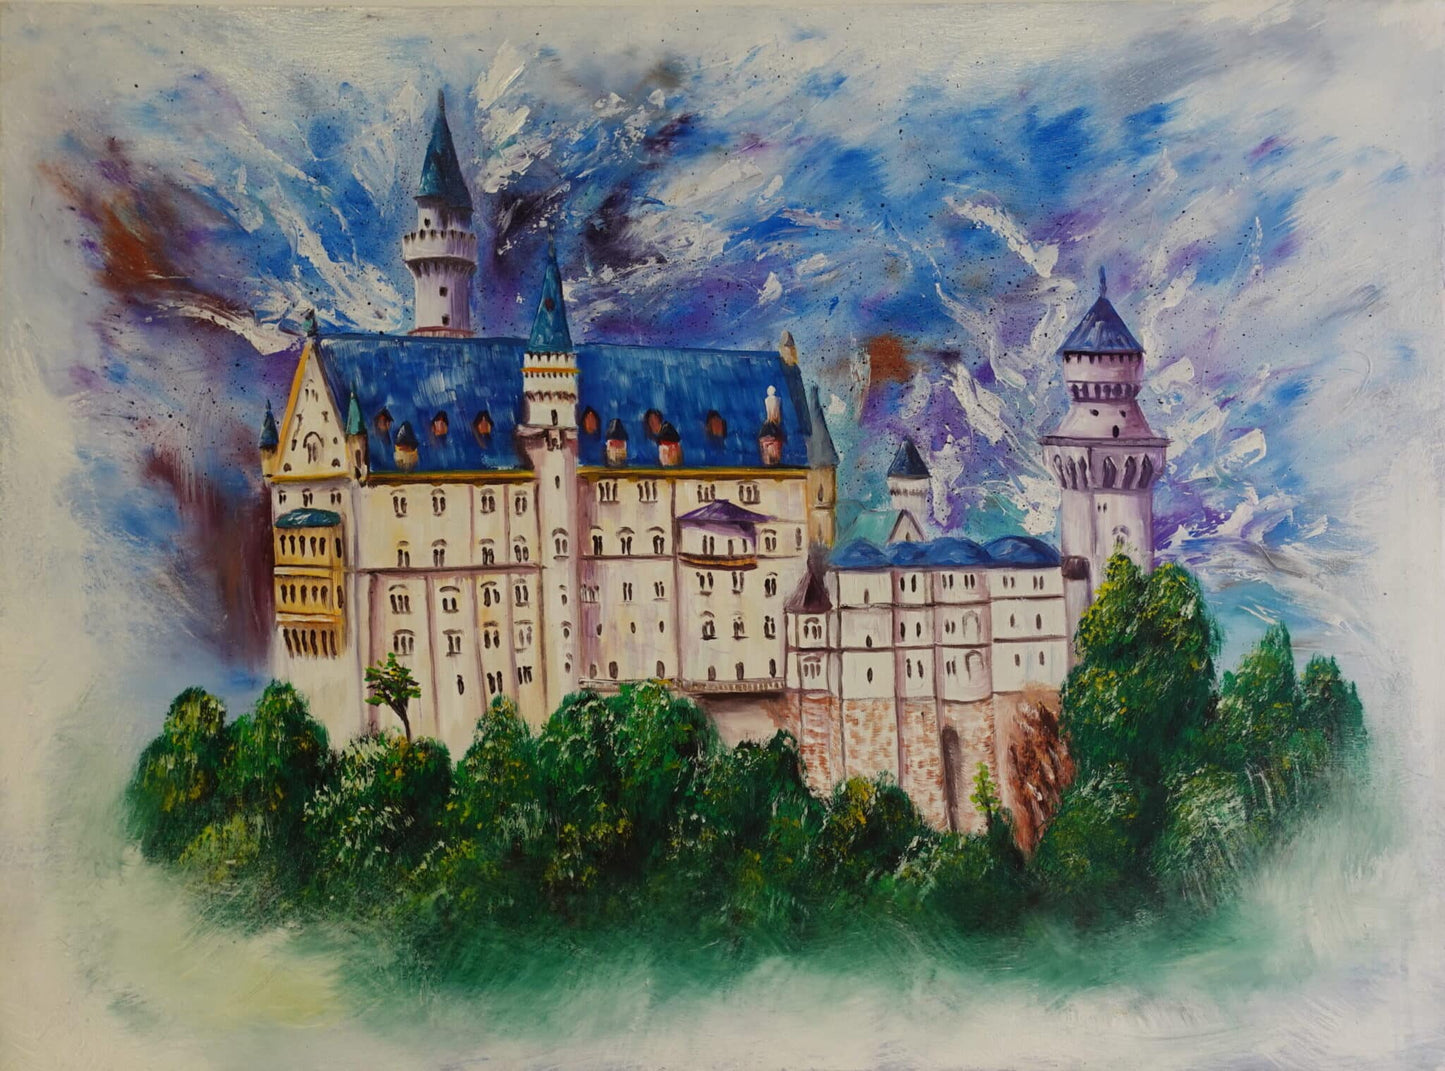 Abstract Neuschwanstein Castle 60 x 40 cm